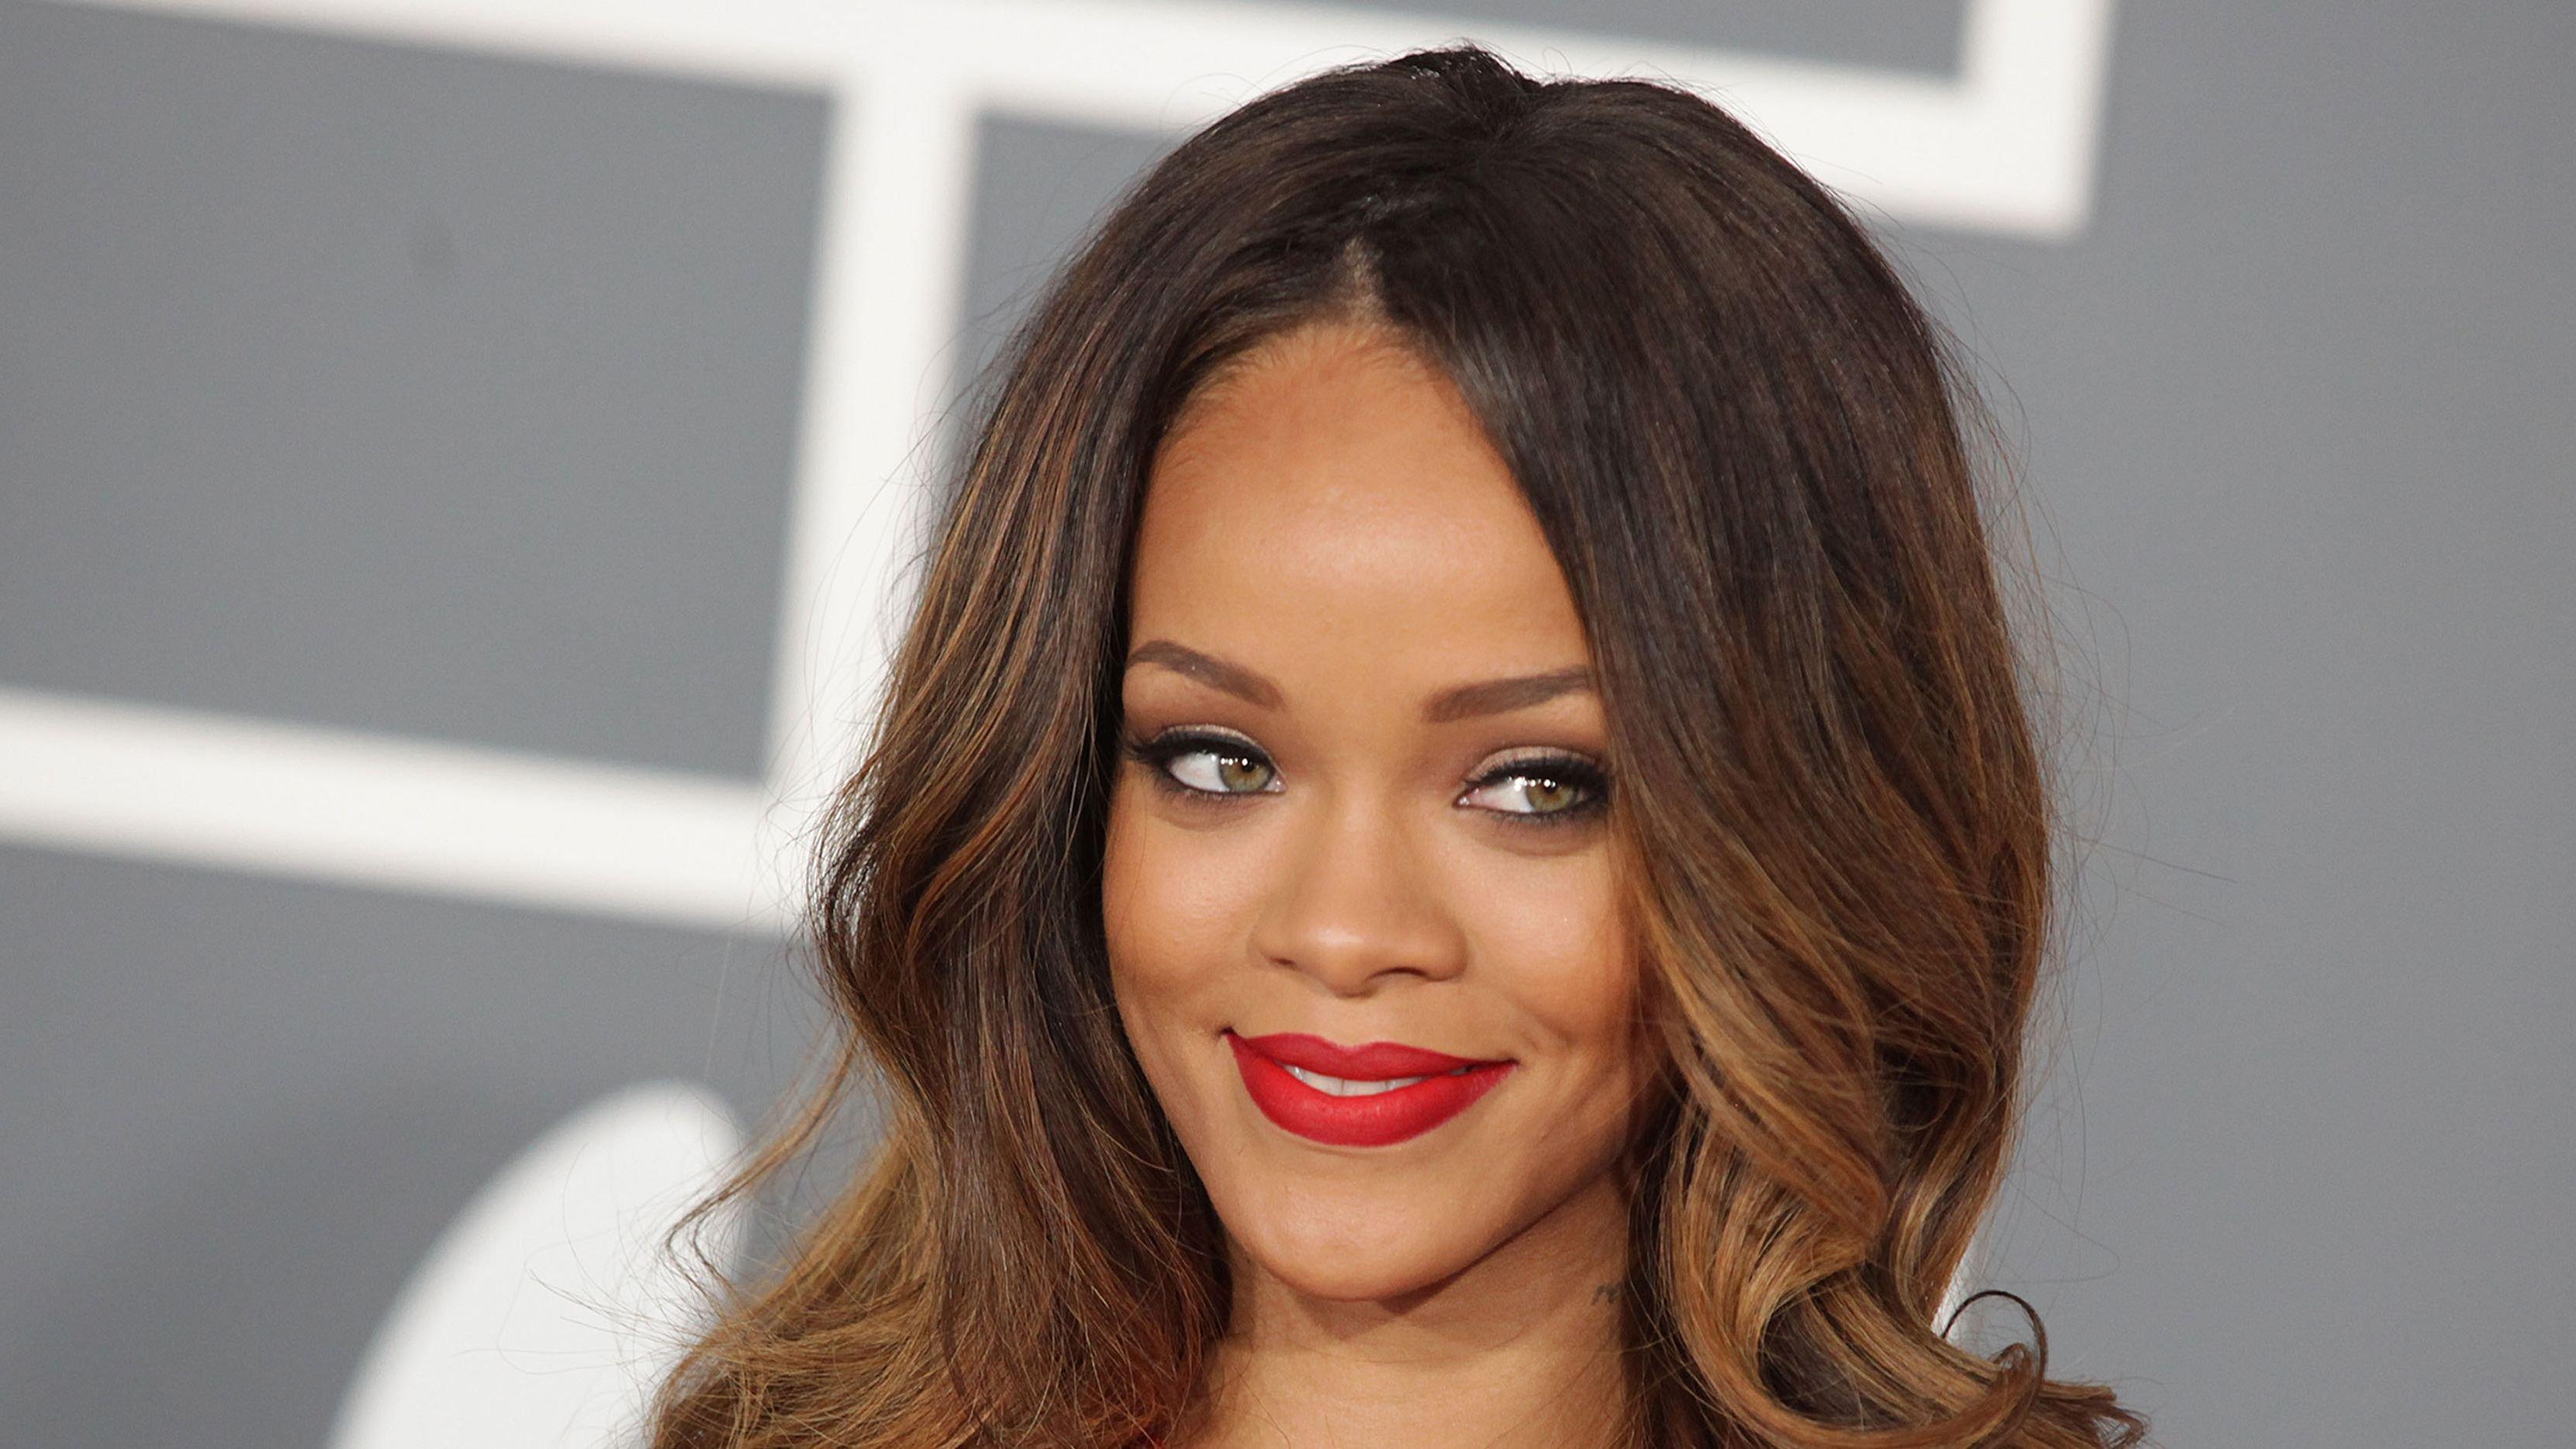 Grammy Award winning singer Rihanna